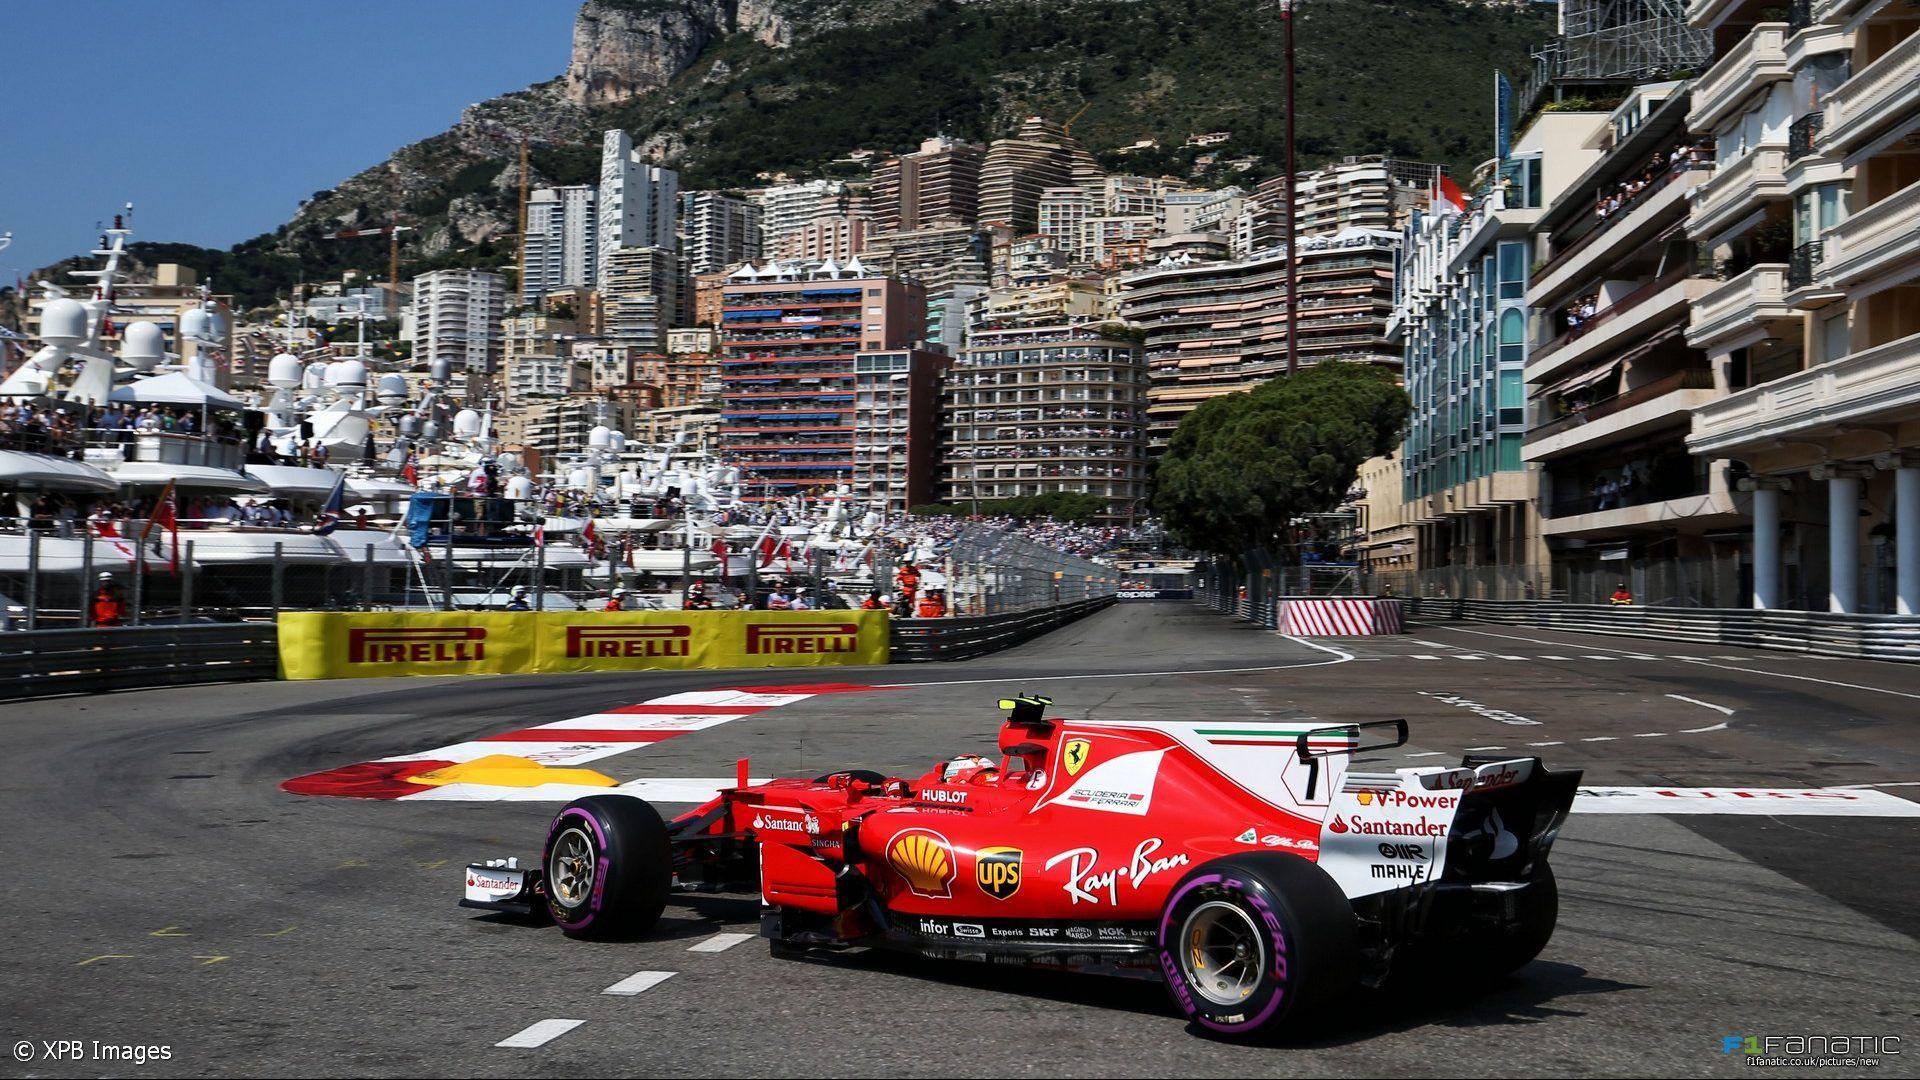 Monaco Grand Prix Wallpaper Free Monaco Grand Prix Background